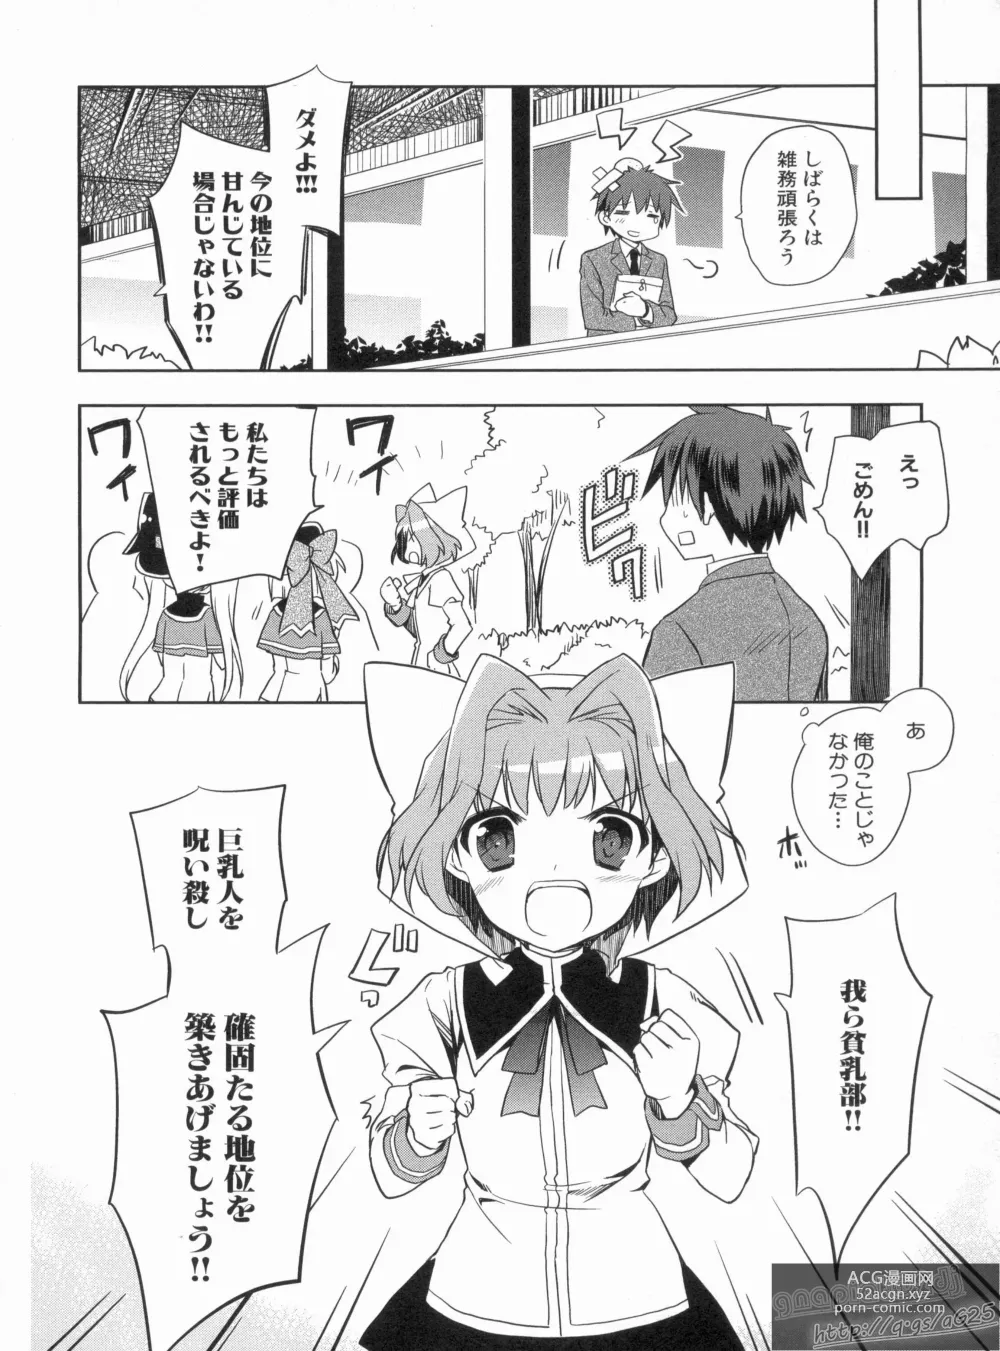 Page 10 of manga Shin Koihime Musou Gaishi Saiten VOL.3